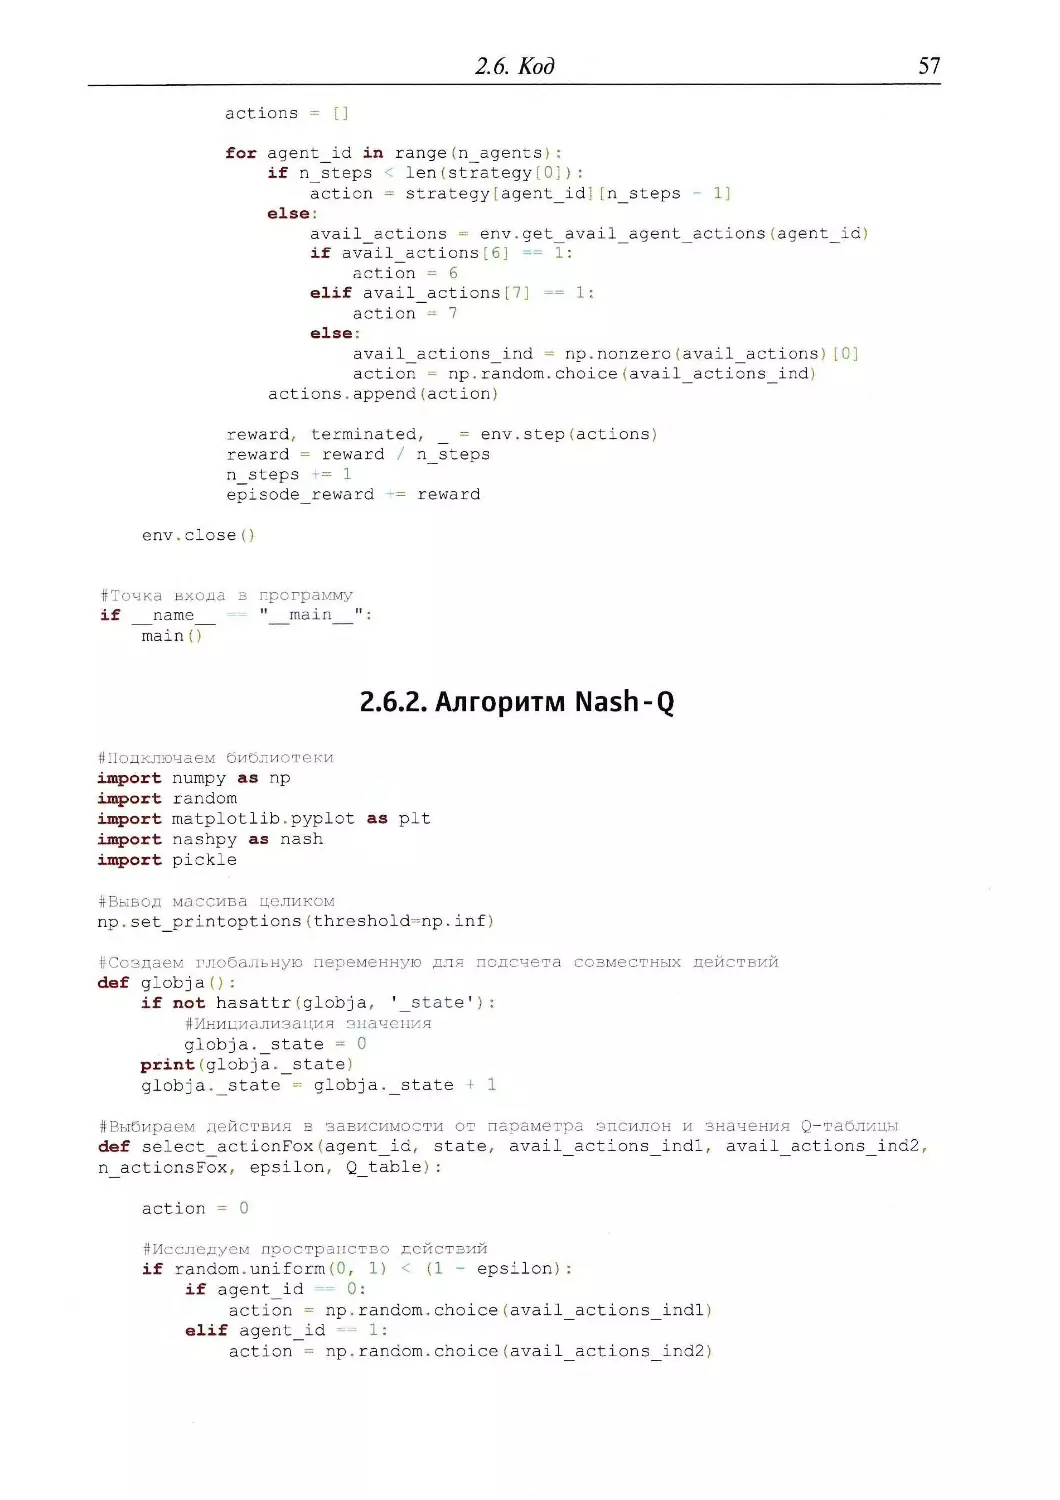 2.6.2. Алгоритм Nash-Q